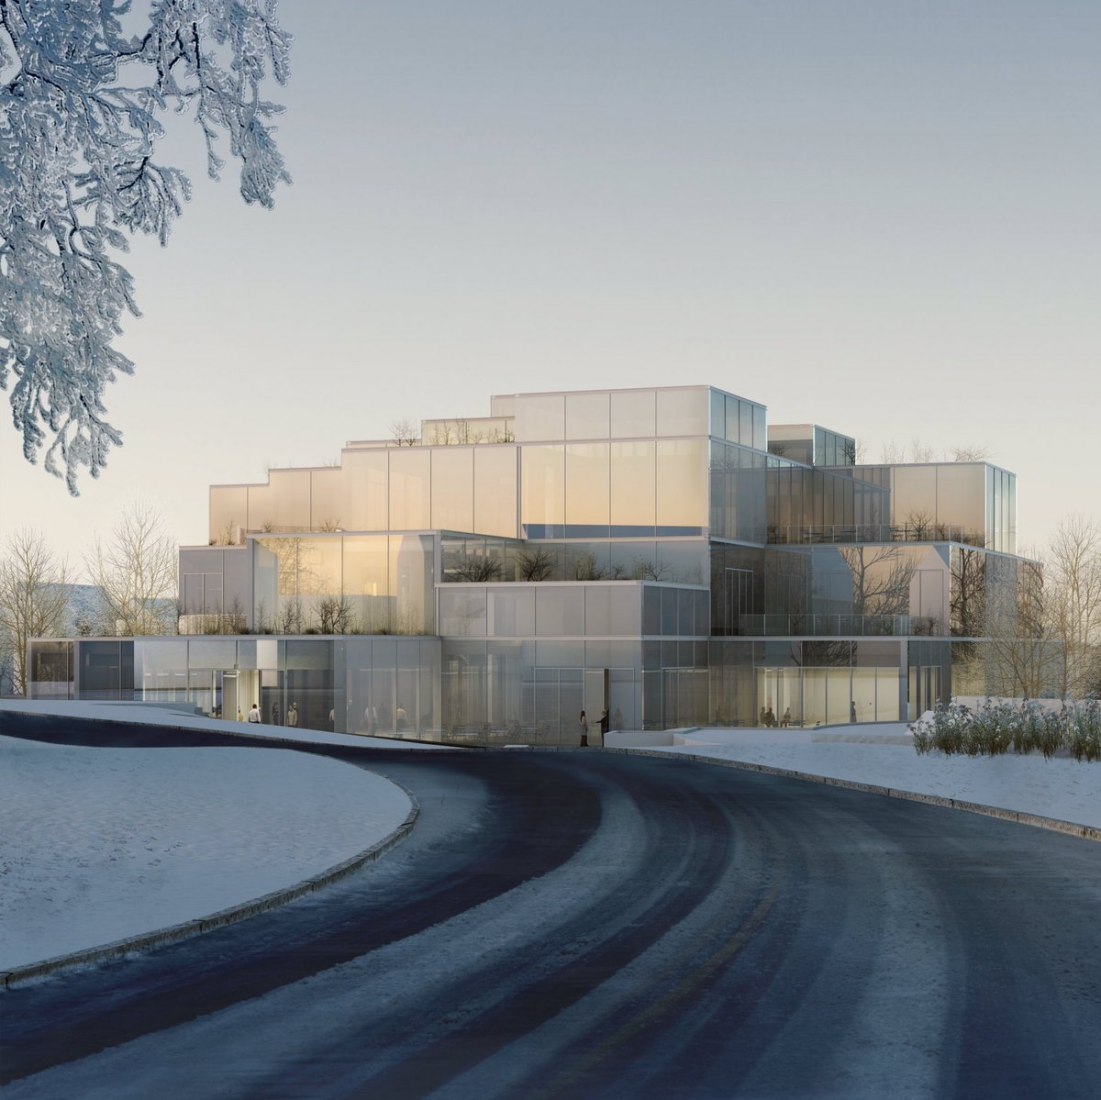 Visualización con paisaje nevado. Nuevo Centro de Aprendizaje HSG en la Universidad de St. Gallen por Sou Fujimoto Architects. Imagen cortesía de la Universidad de St. Gallen